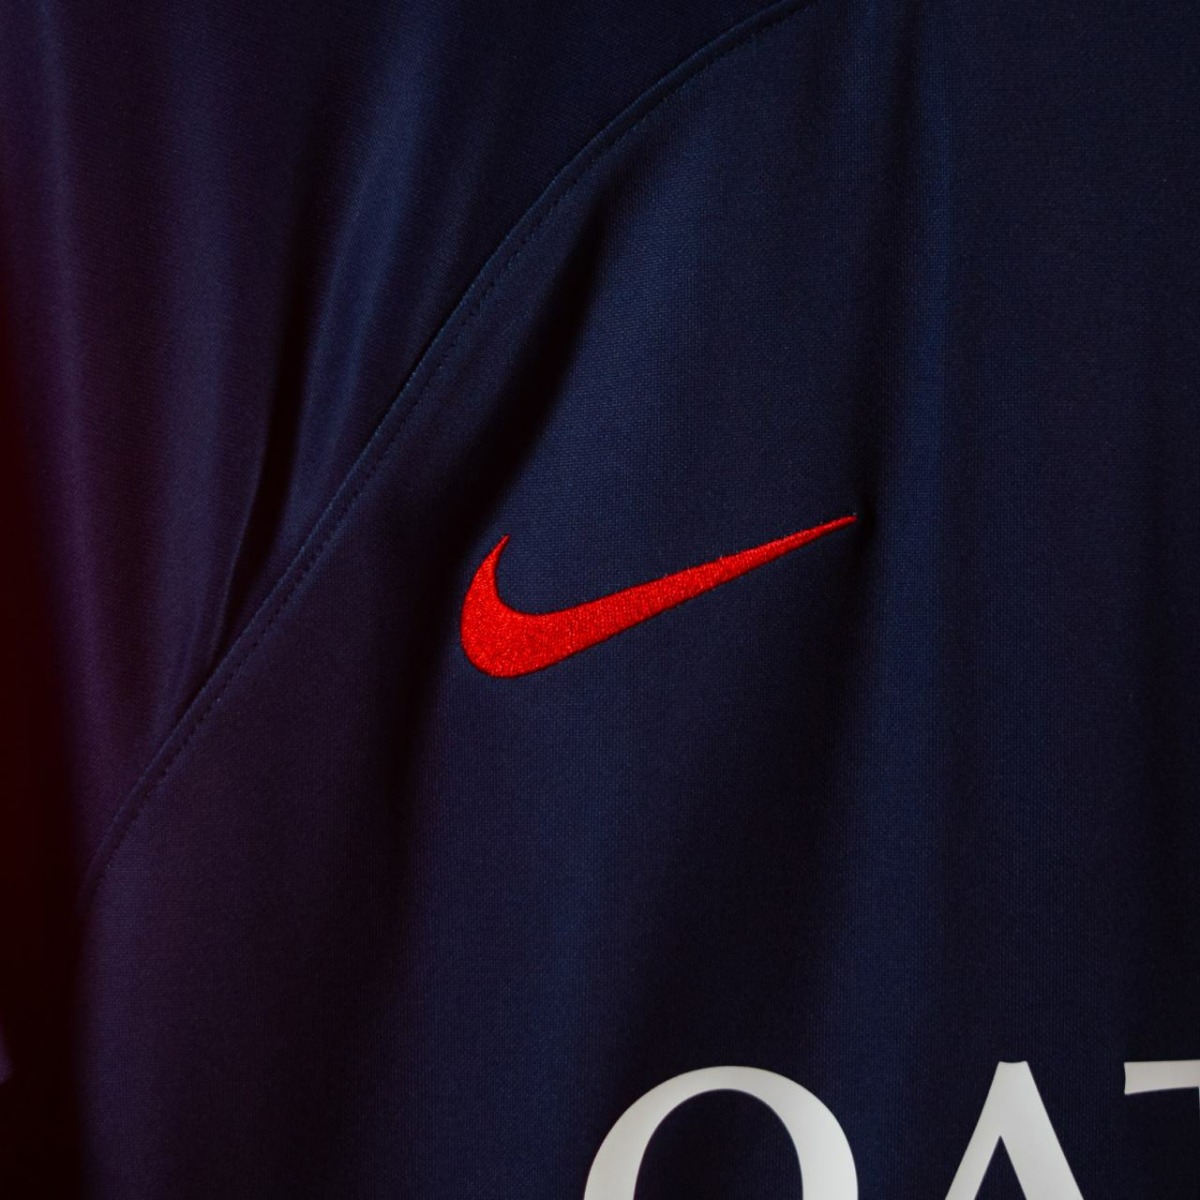 Le PSG dévoile son nouveau maillot domicile 2023-2024 conçu par Nike et met  en scène Mbappé, Messi, Neymar JR 